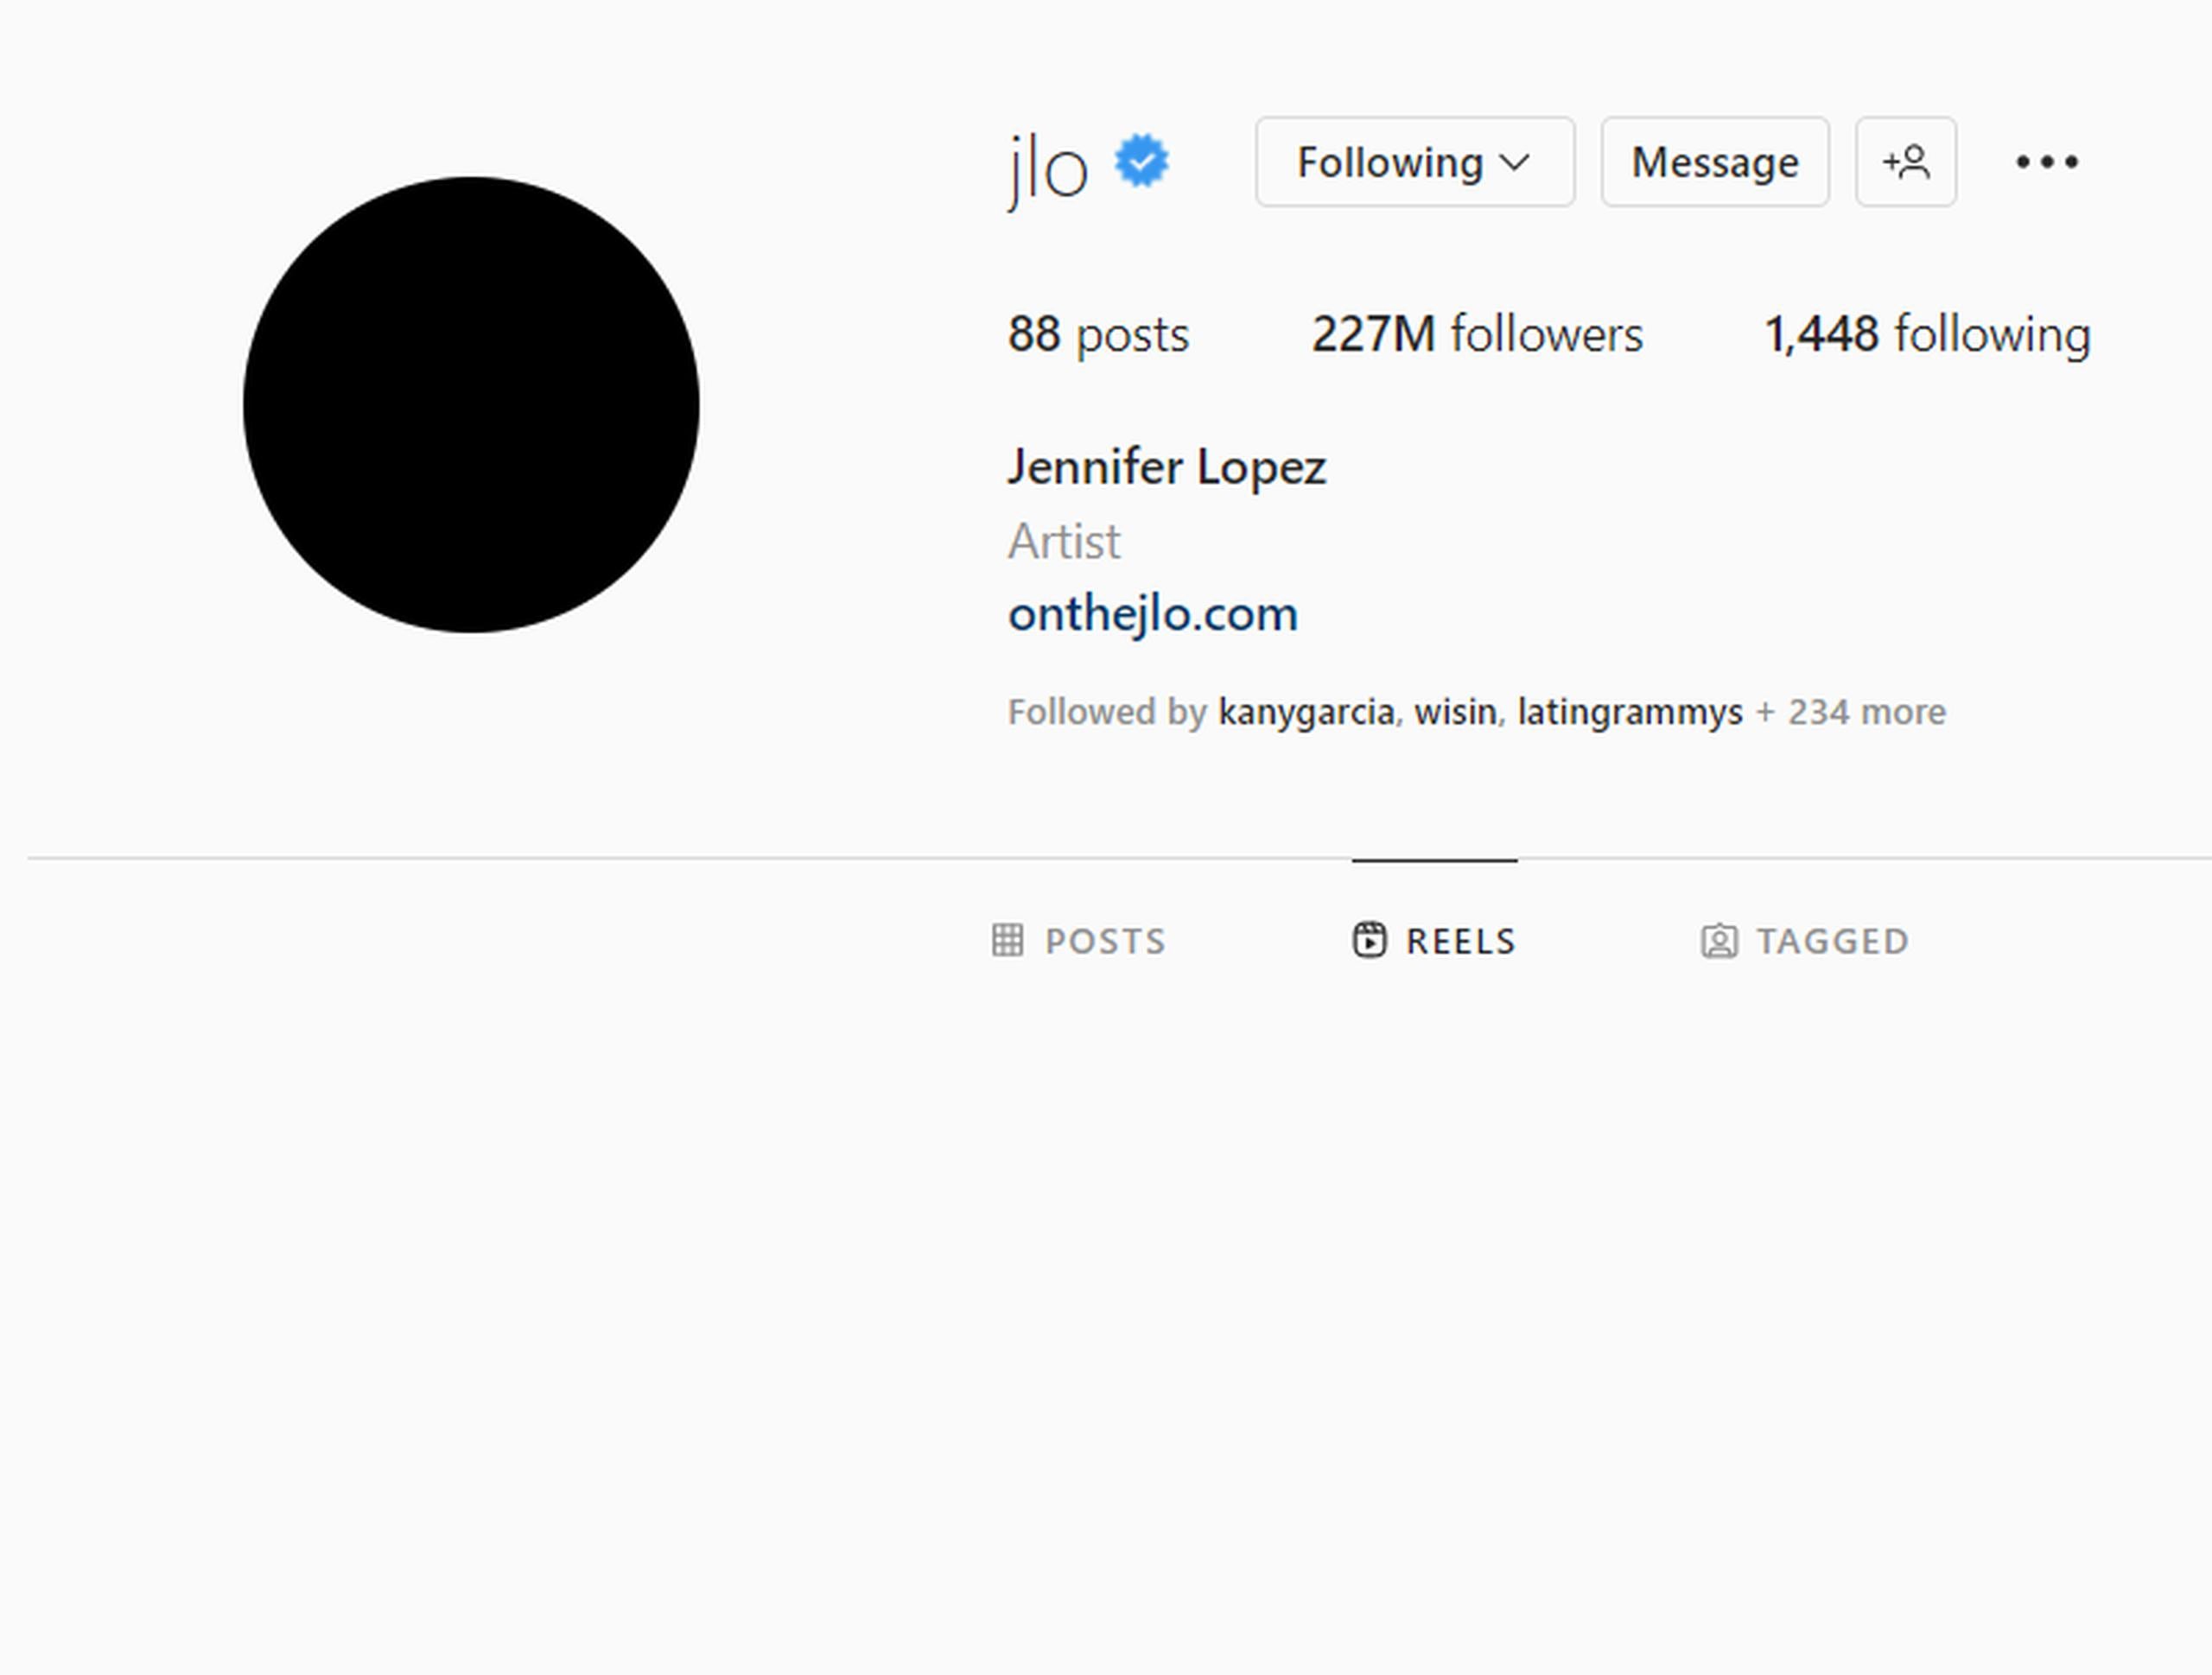 Perfil de Jennifer López en Instagram.